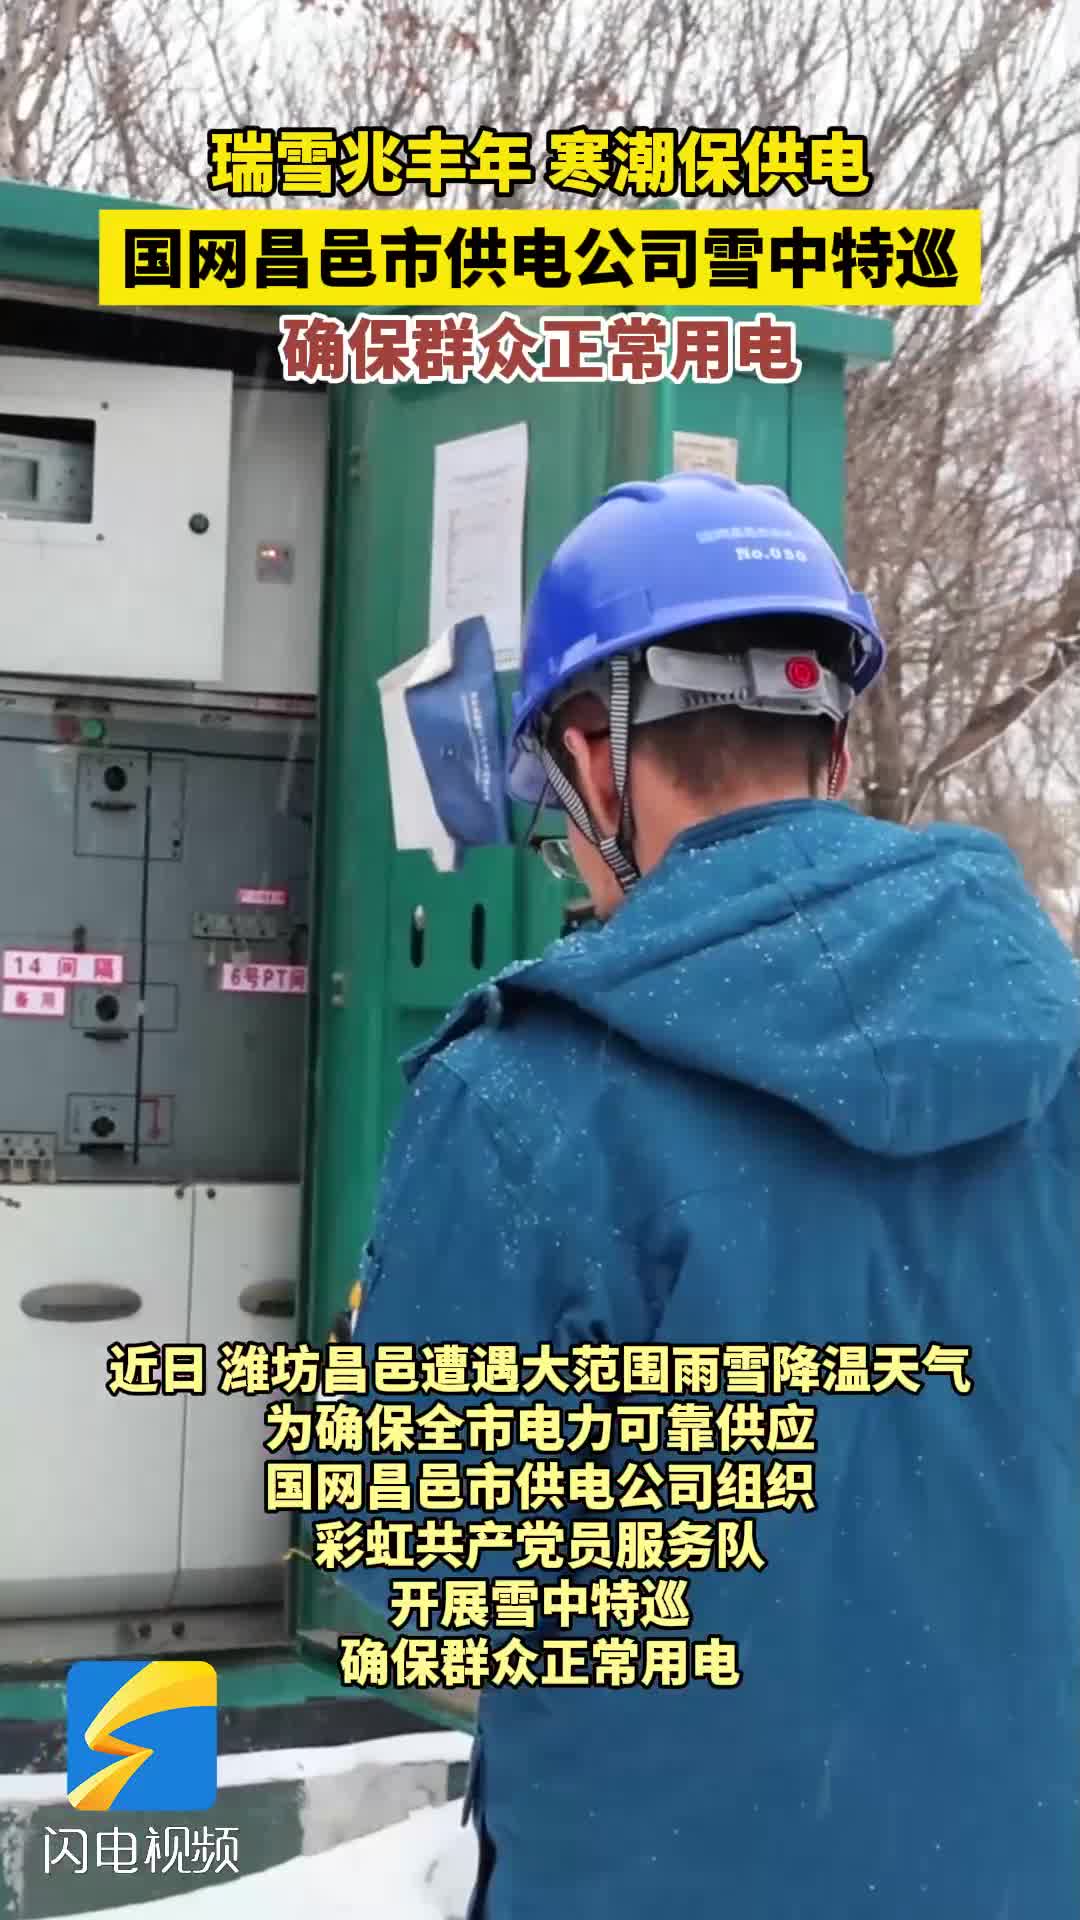 国网昌邑市供电公司雪中特巡 确保群众正常用电